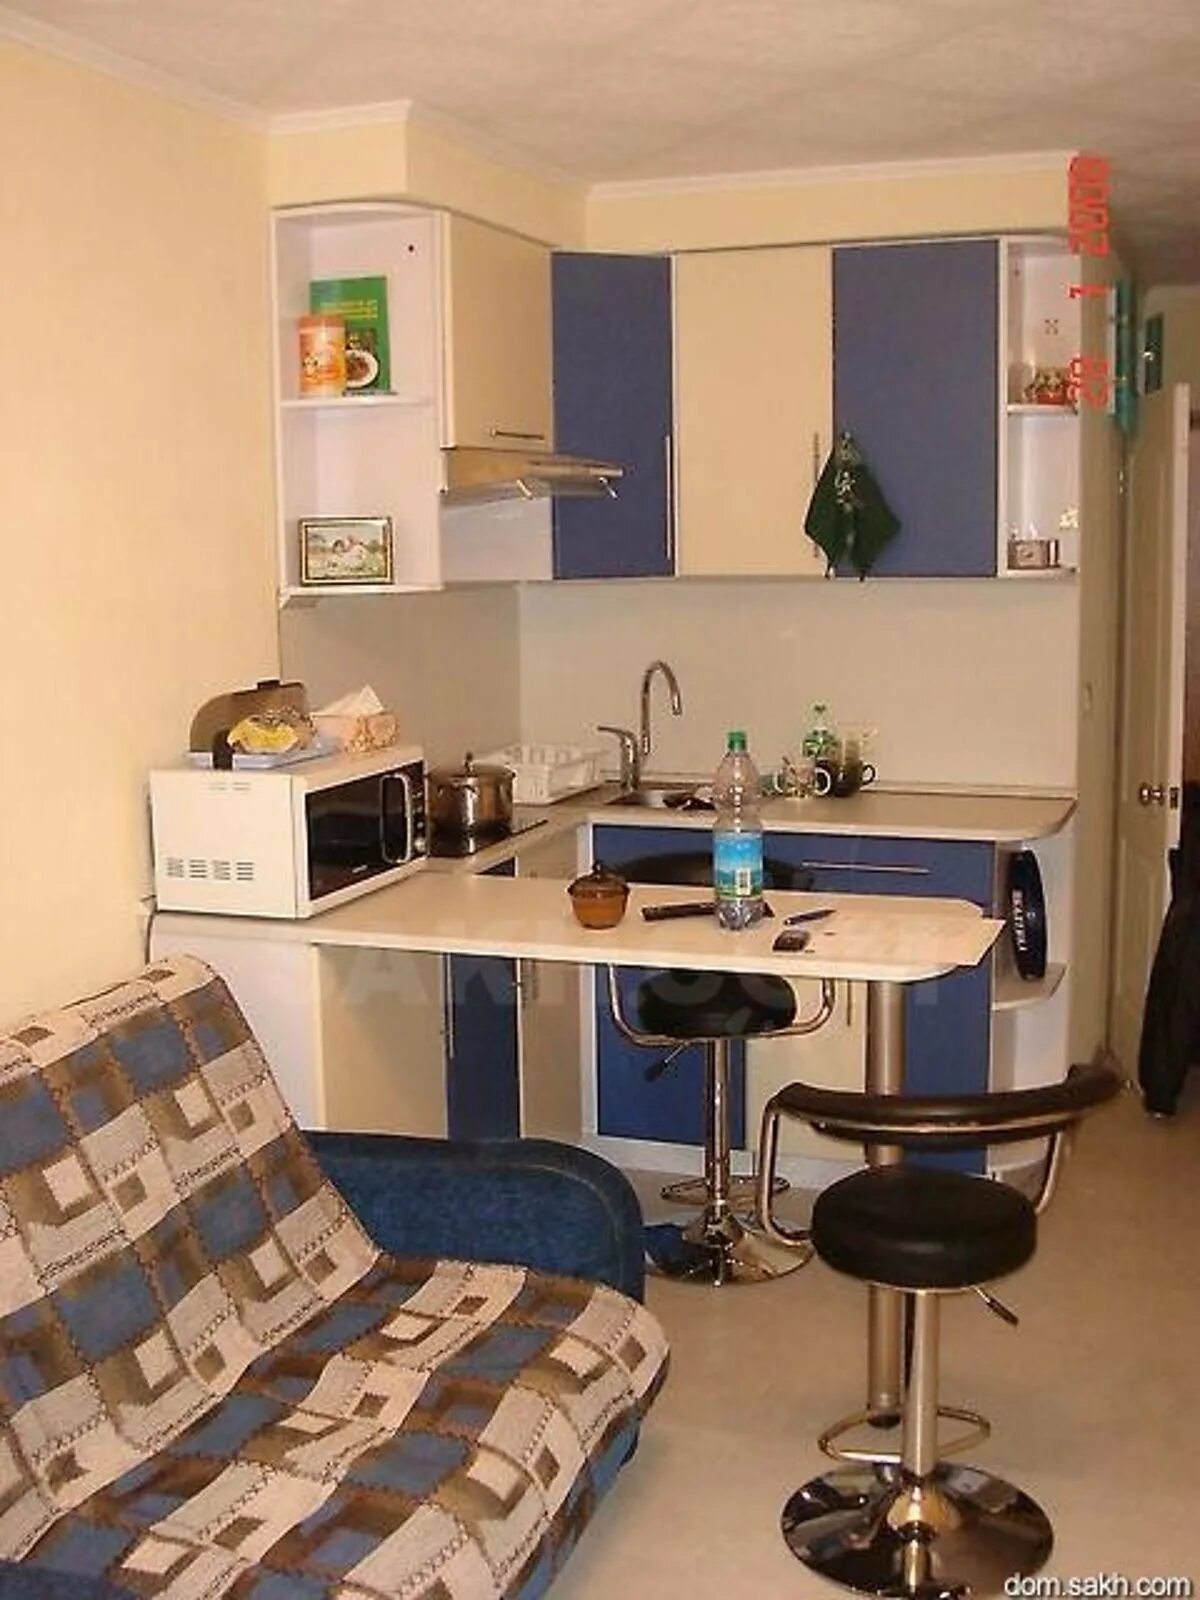 Поставить в общежитии. Обустроить комнату в общежитии. Мини кухня для комнаты в общежитии. Кухня в комнате в общежитии. Кухонная зона в комнате общежития.